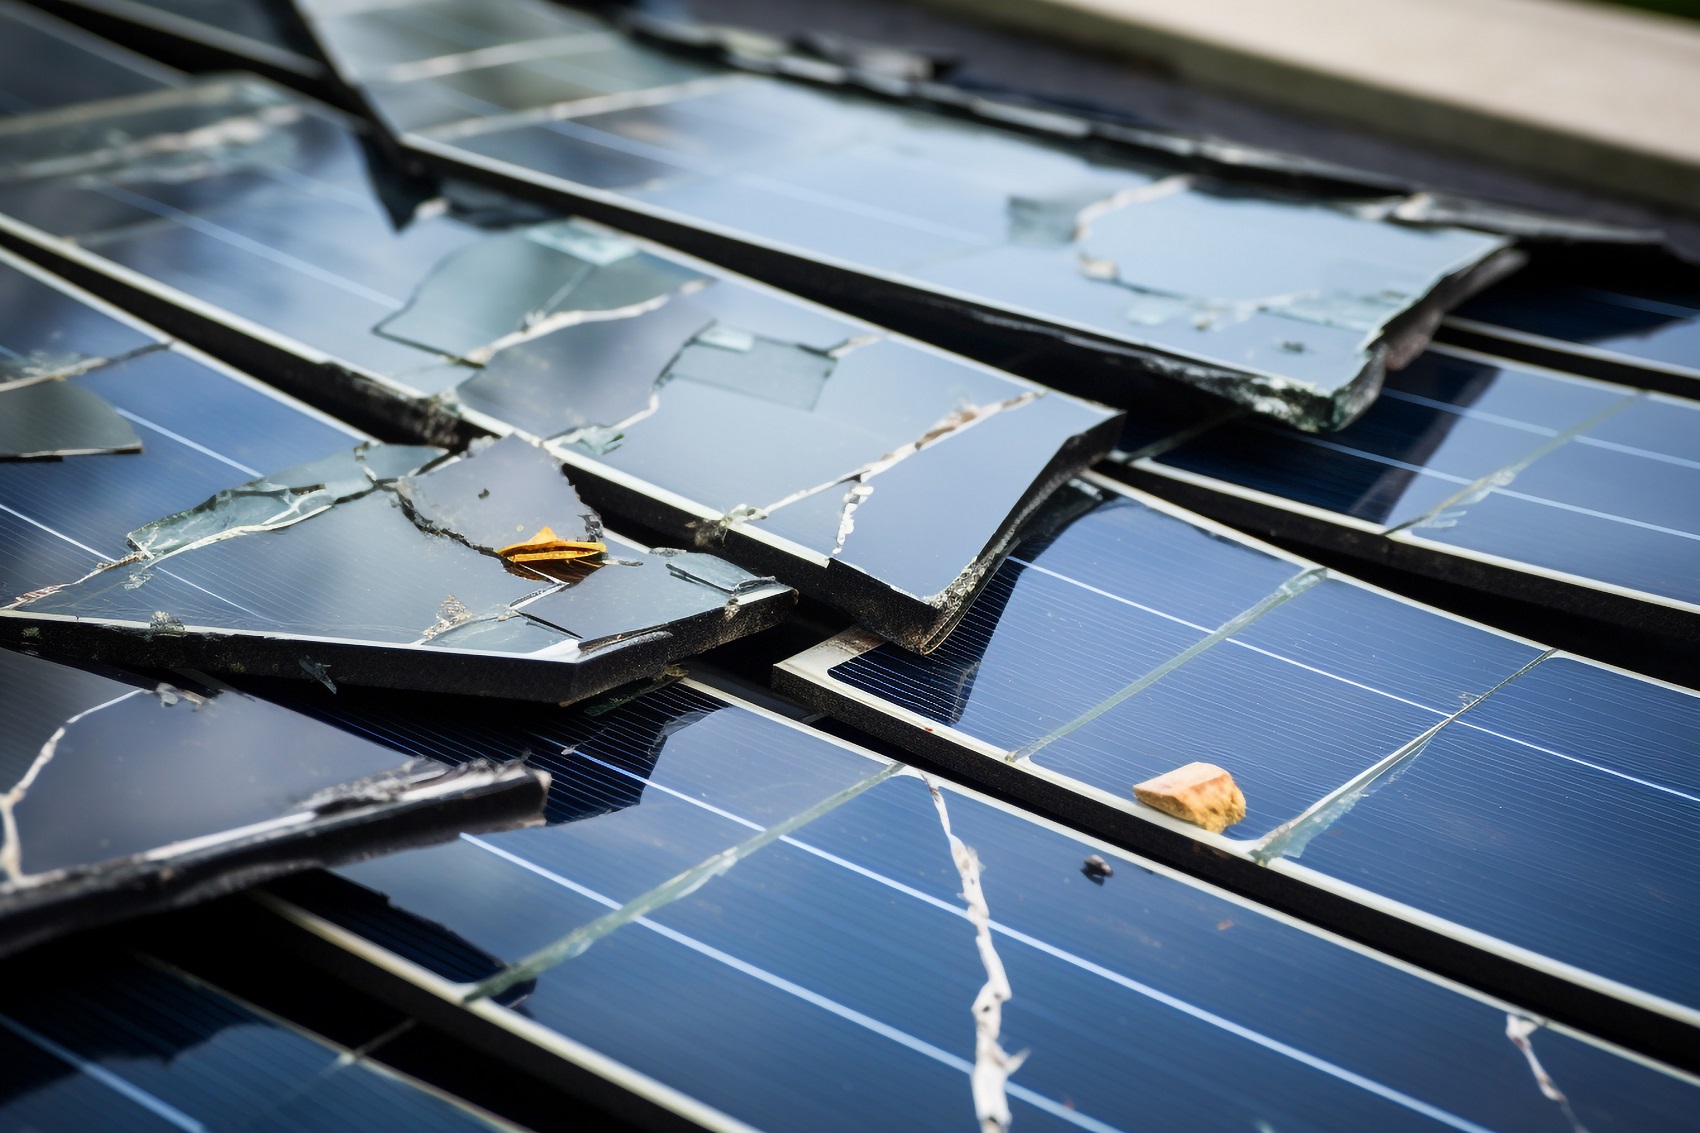 4 Pannelli Fotovoltaici alta efficienza a confronto